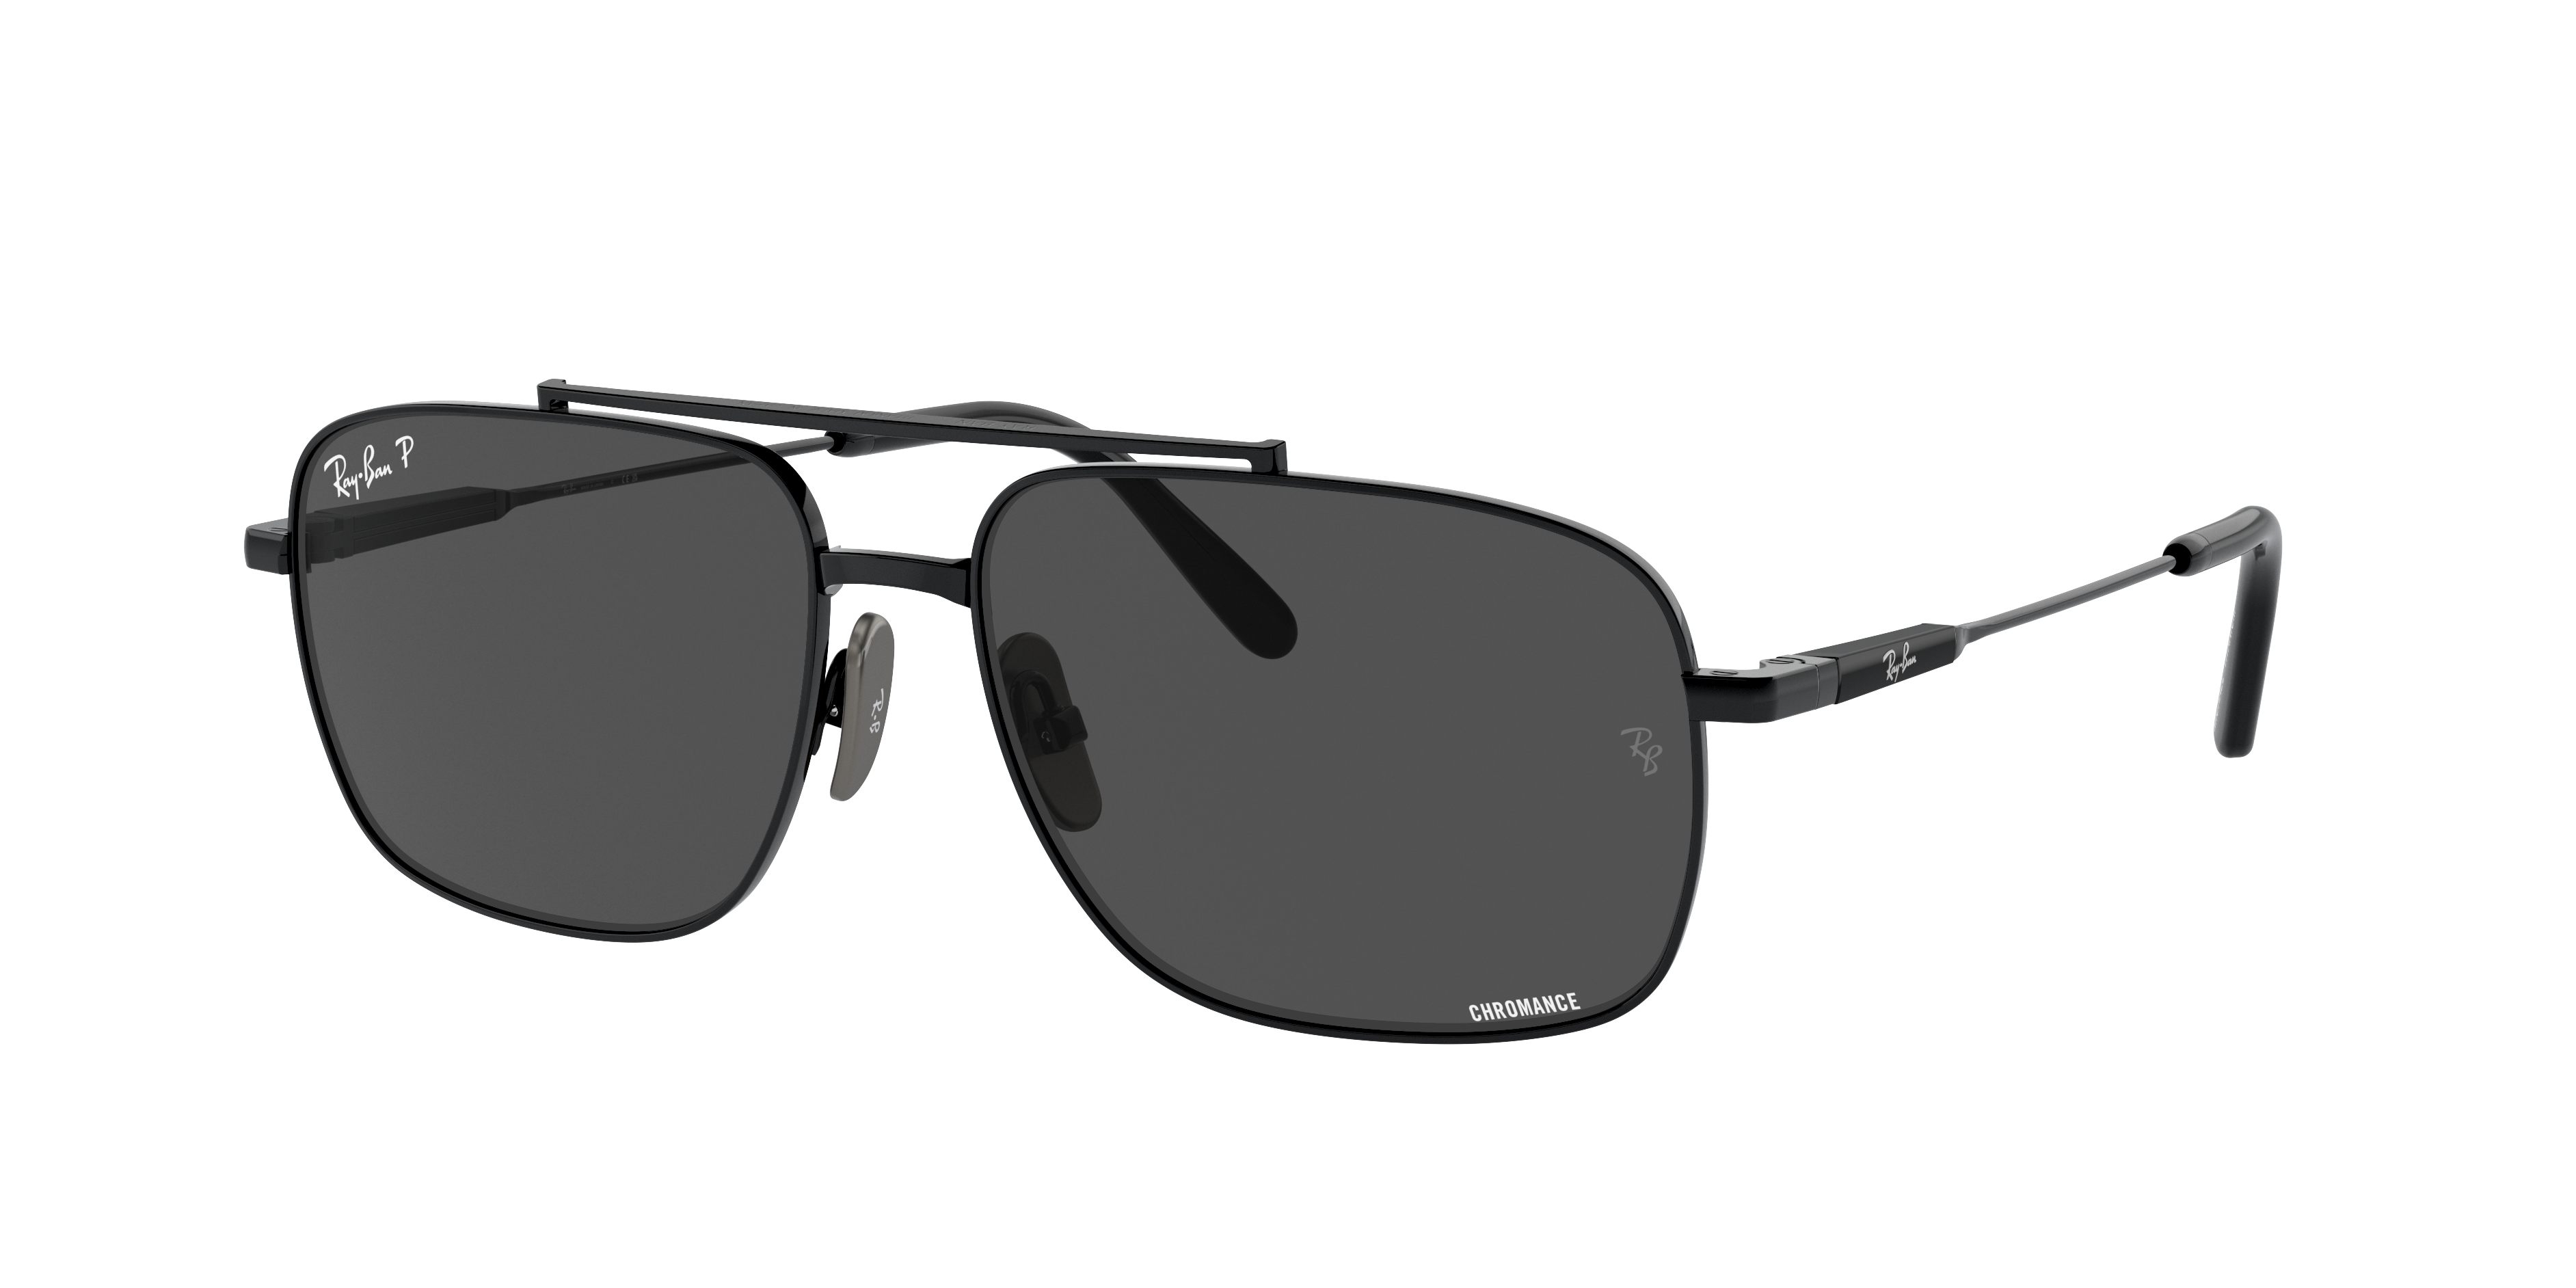 Óculos de Sol Ray-Ban lentes polarizadas.